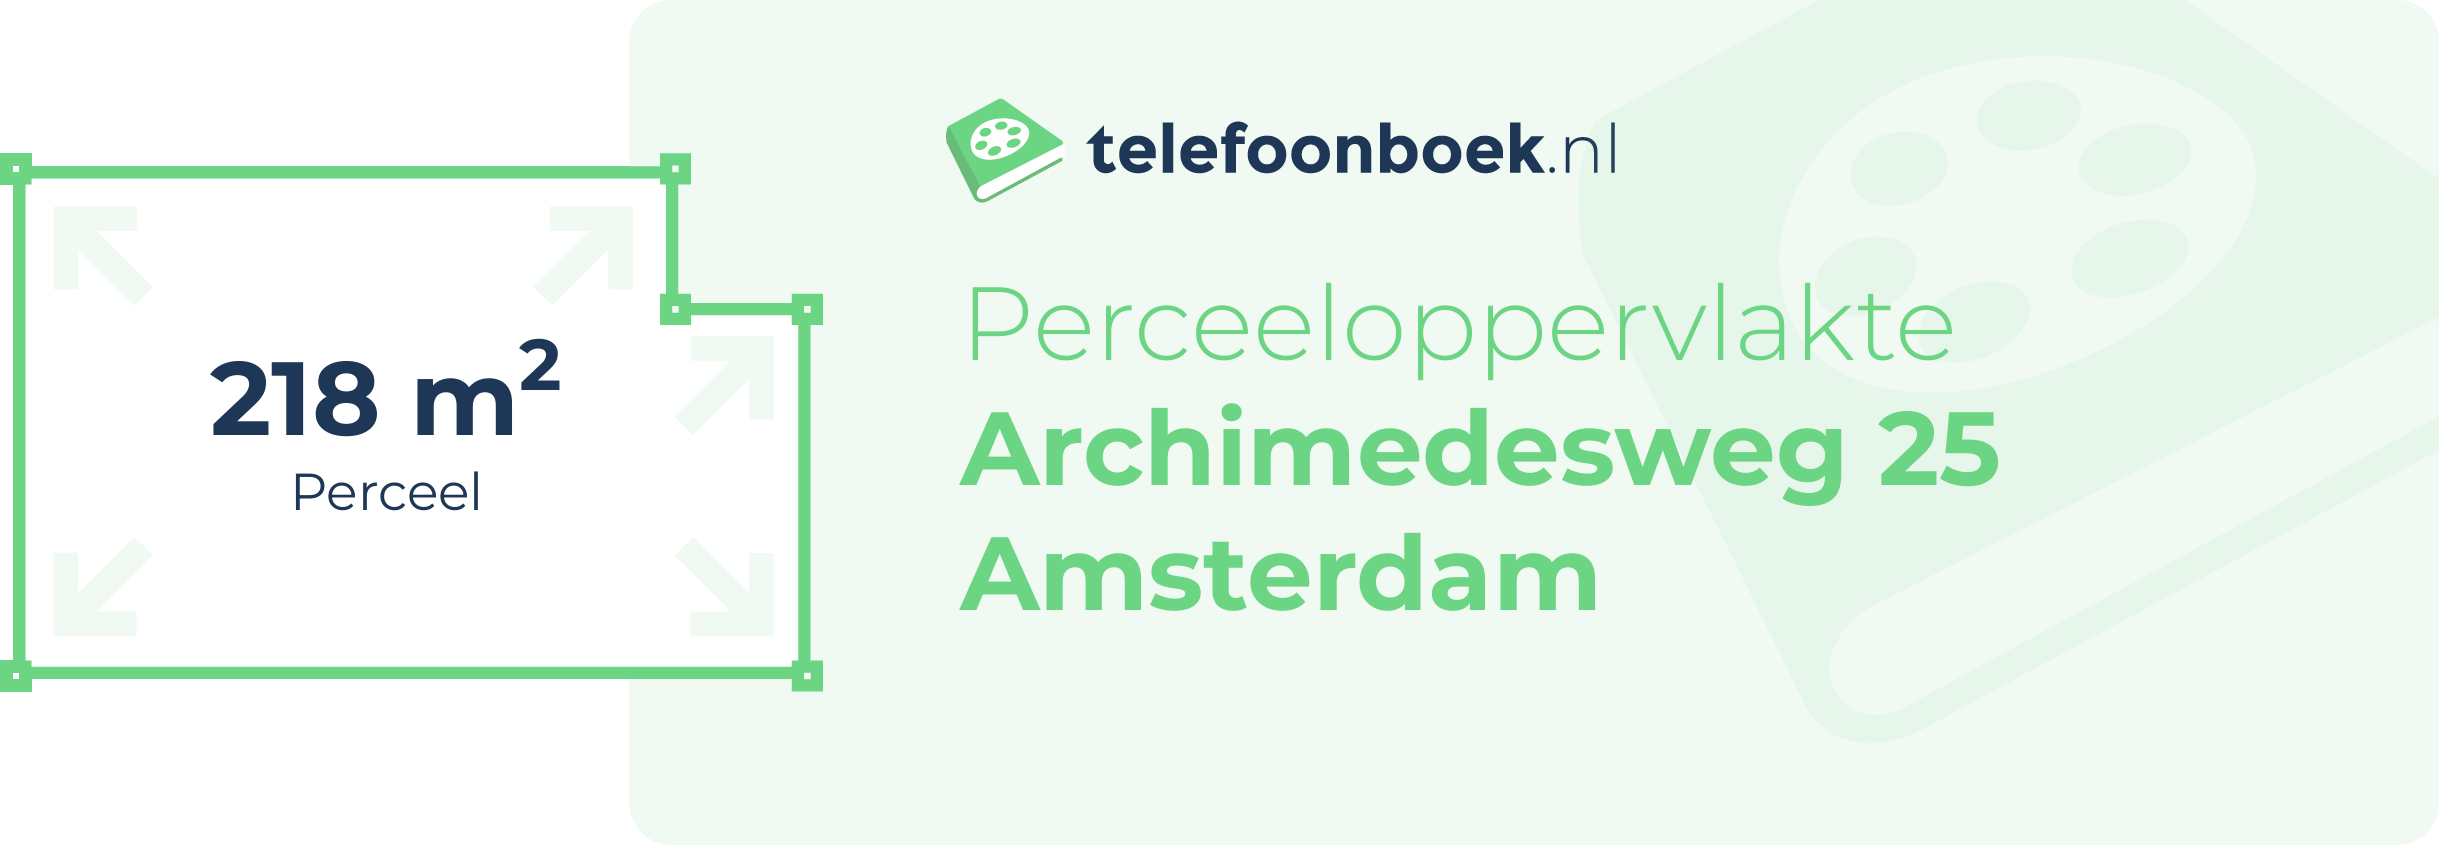 Perceeloppervlakte Archimedesweg 25 Amsterdam